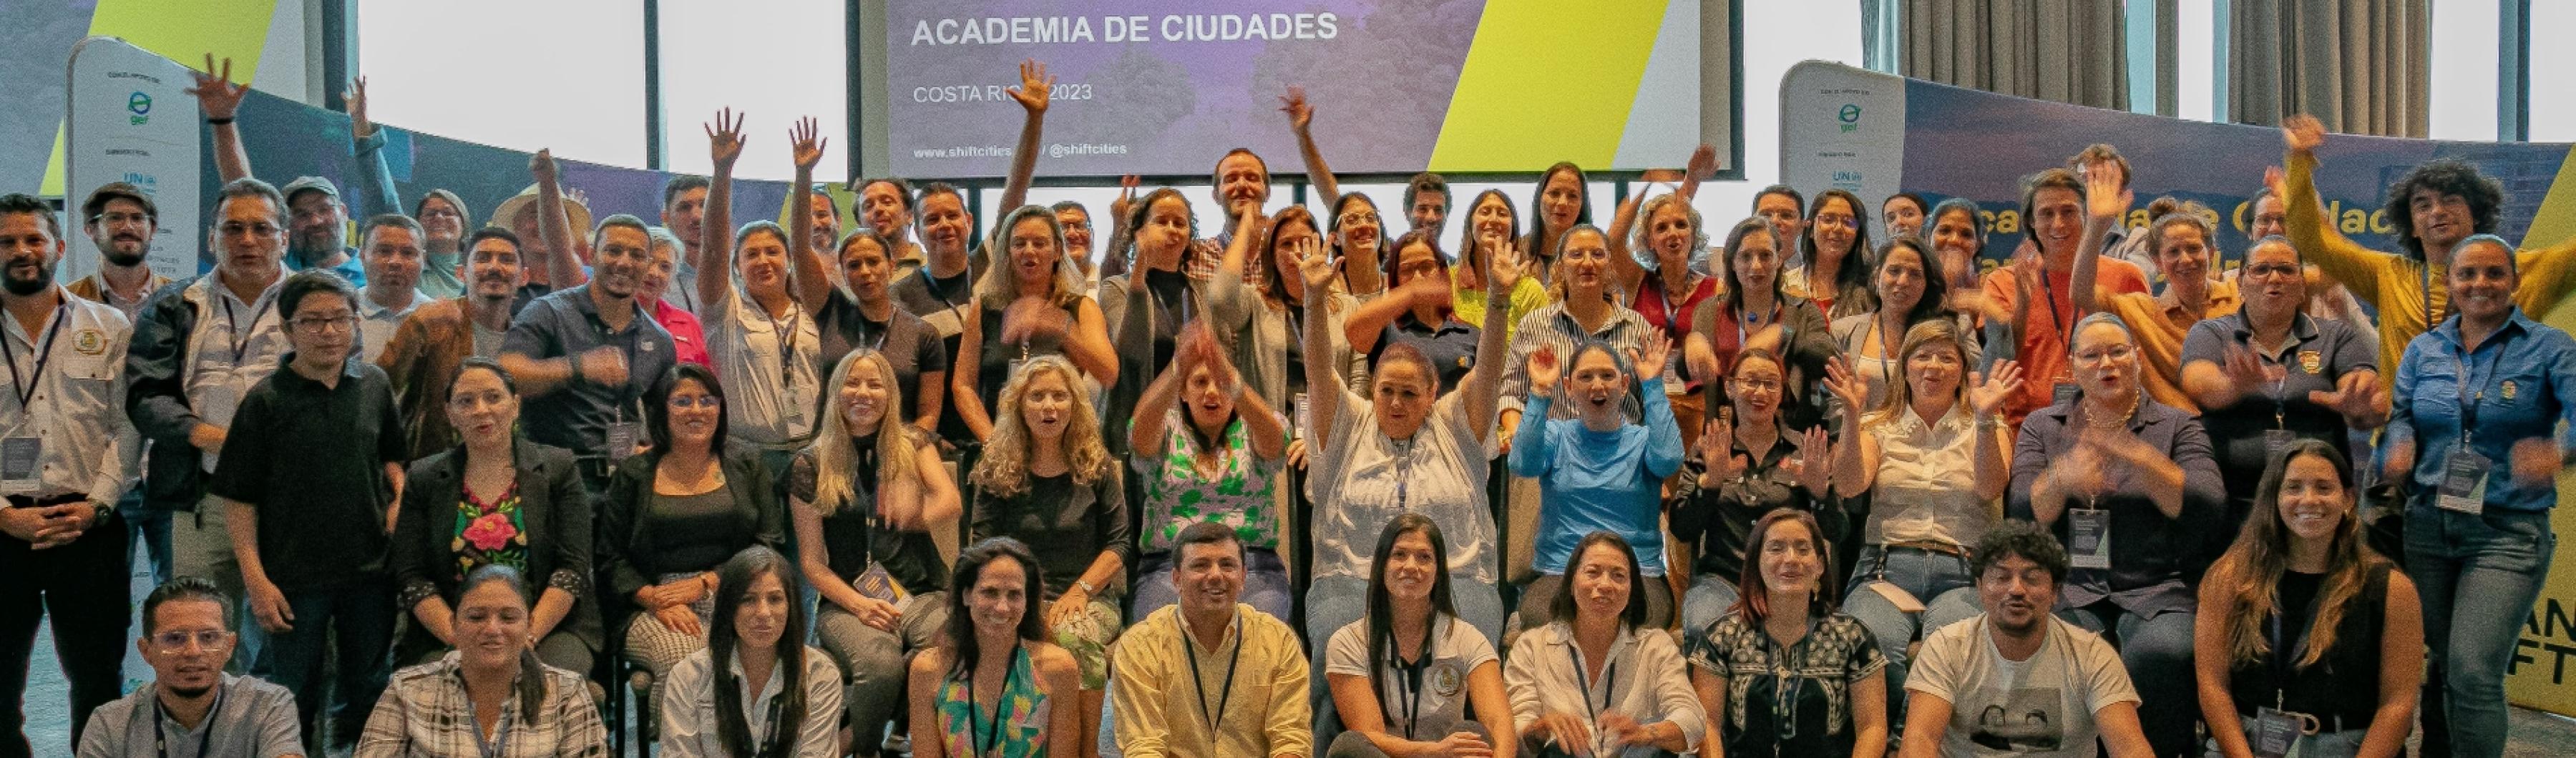 UrbanShift Costa Rica Academia da Cidade participantes e organizadores